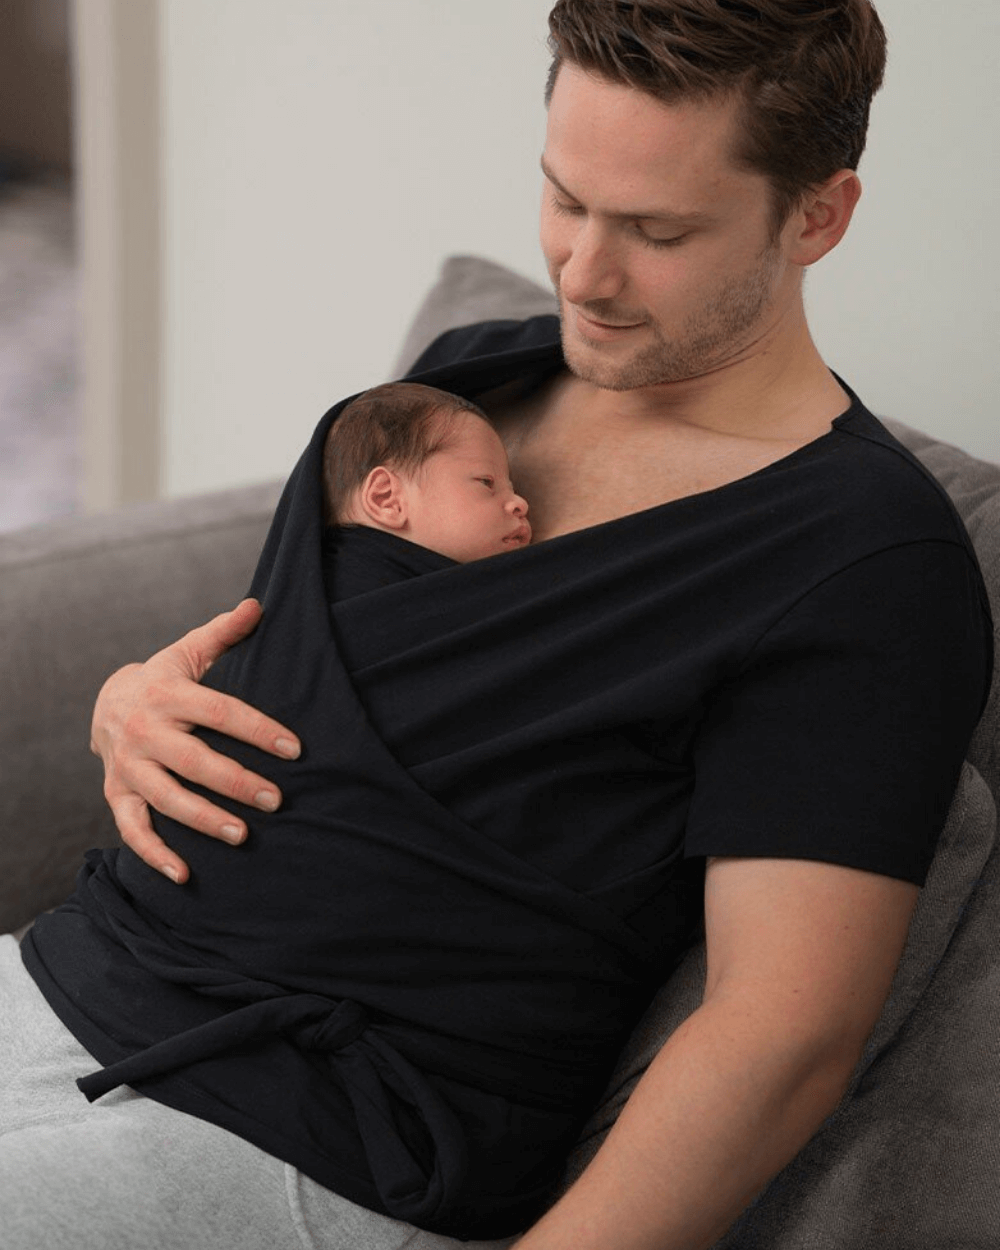 Bluza pentru infasat pentru barbati, skin to skin, conectare cu bebe